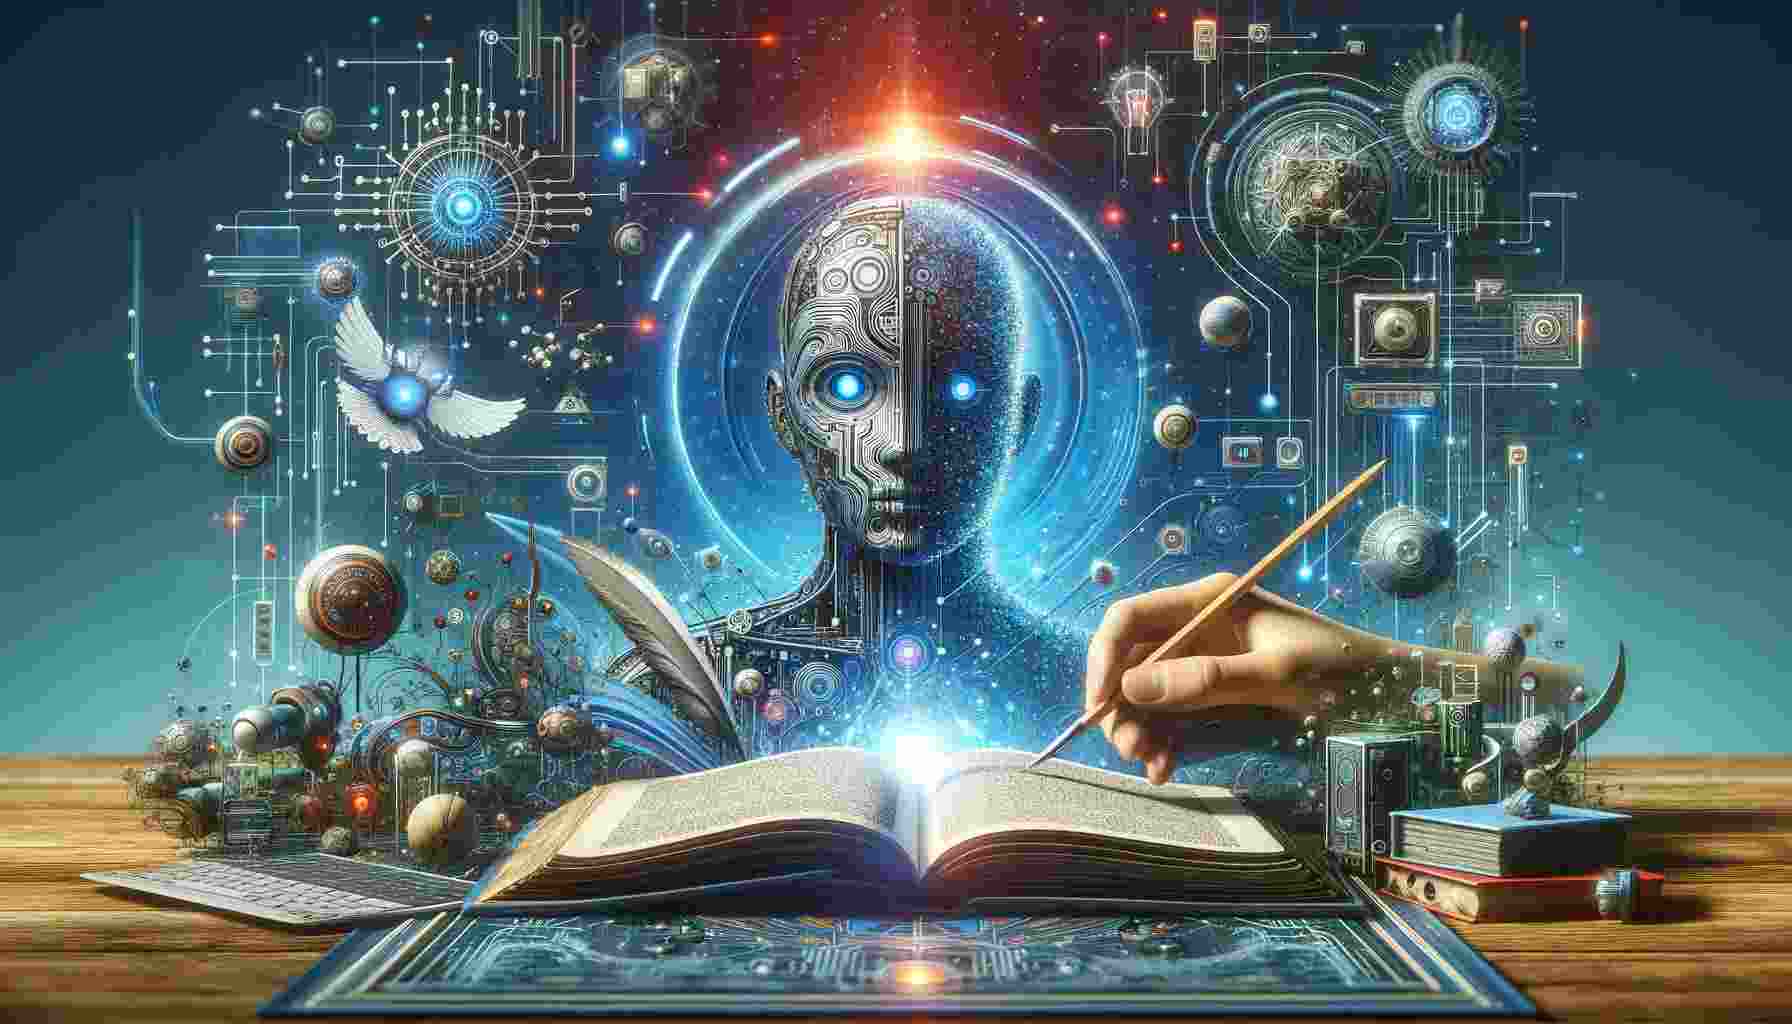  Elementi Essenziali della Narrativa di Fantascienza Guidata dall'Intelligenza Artificiale 